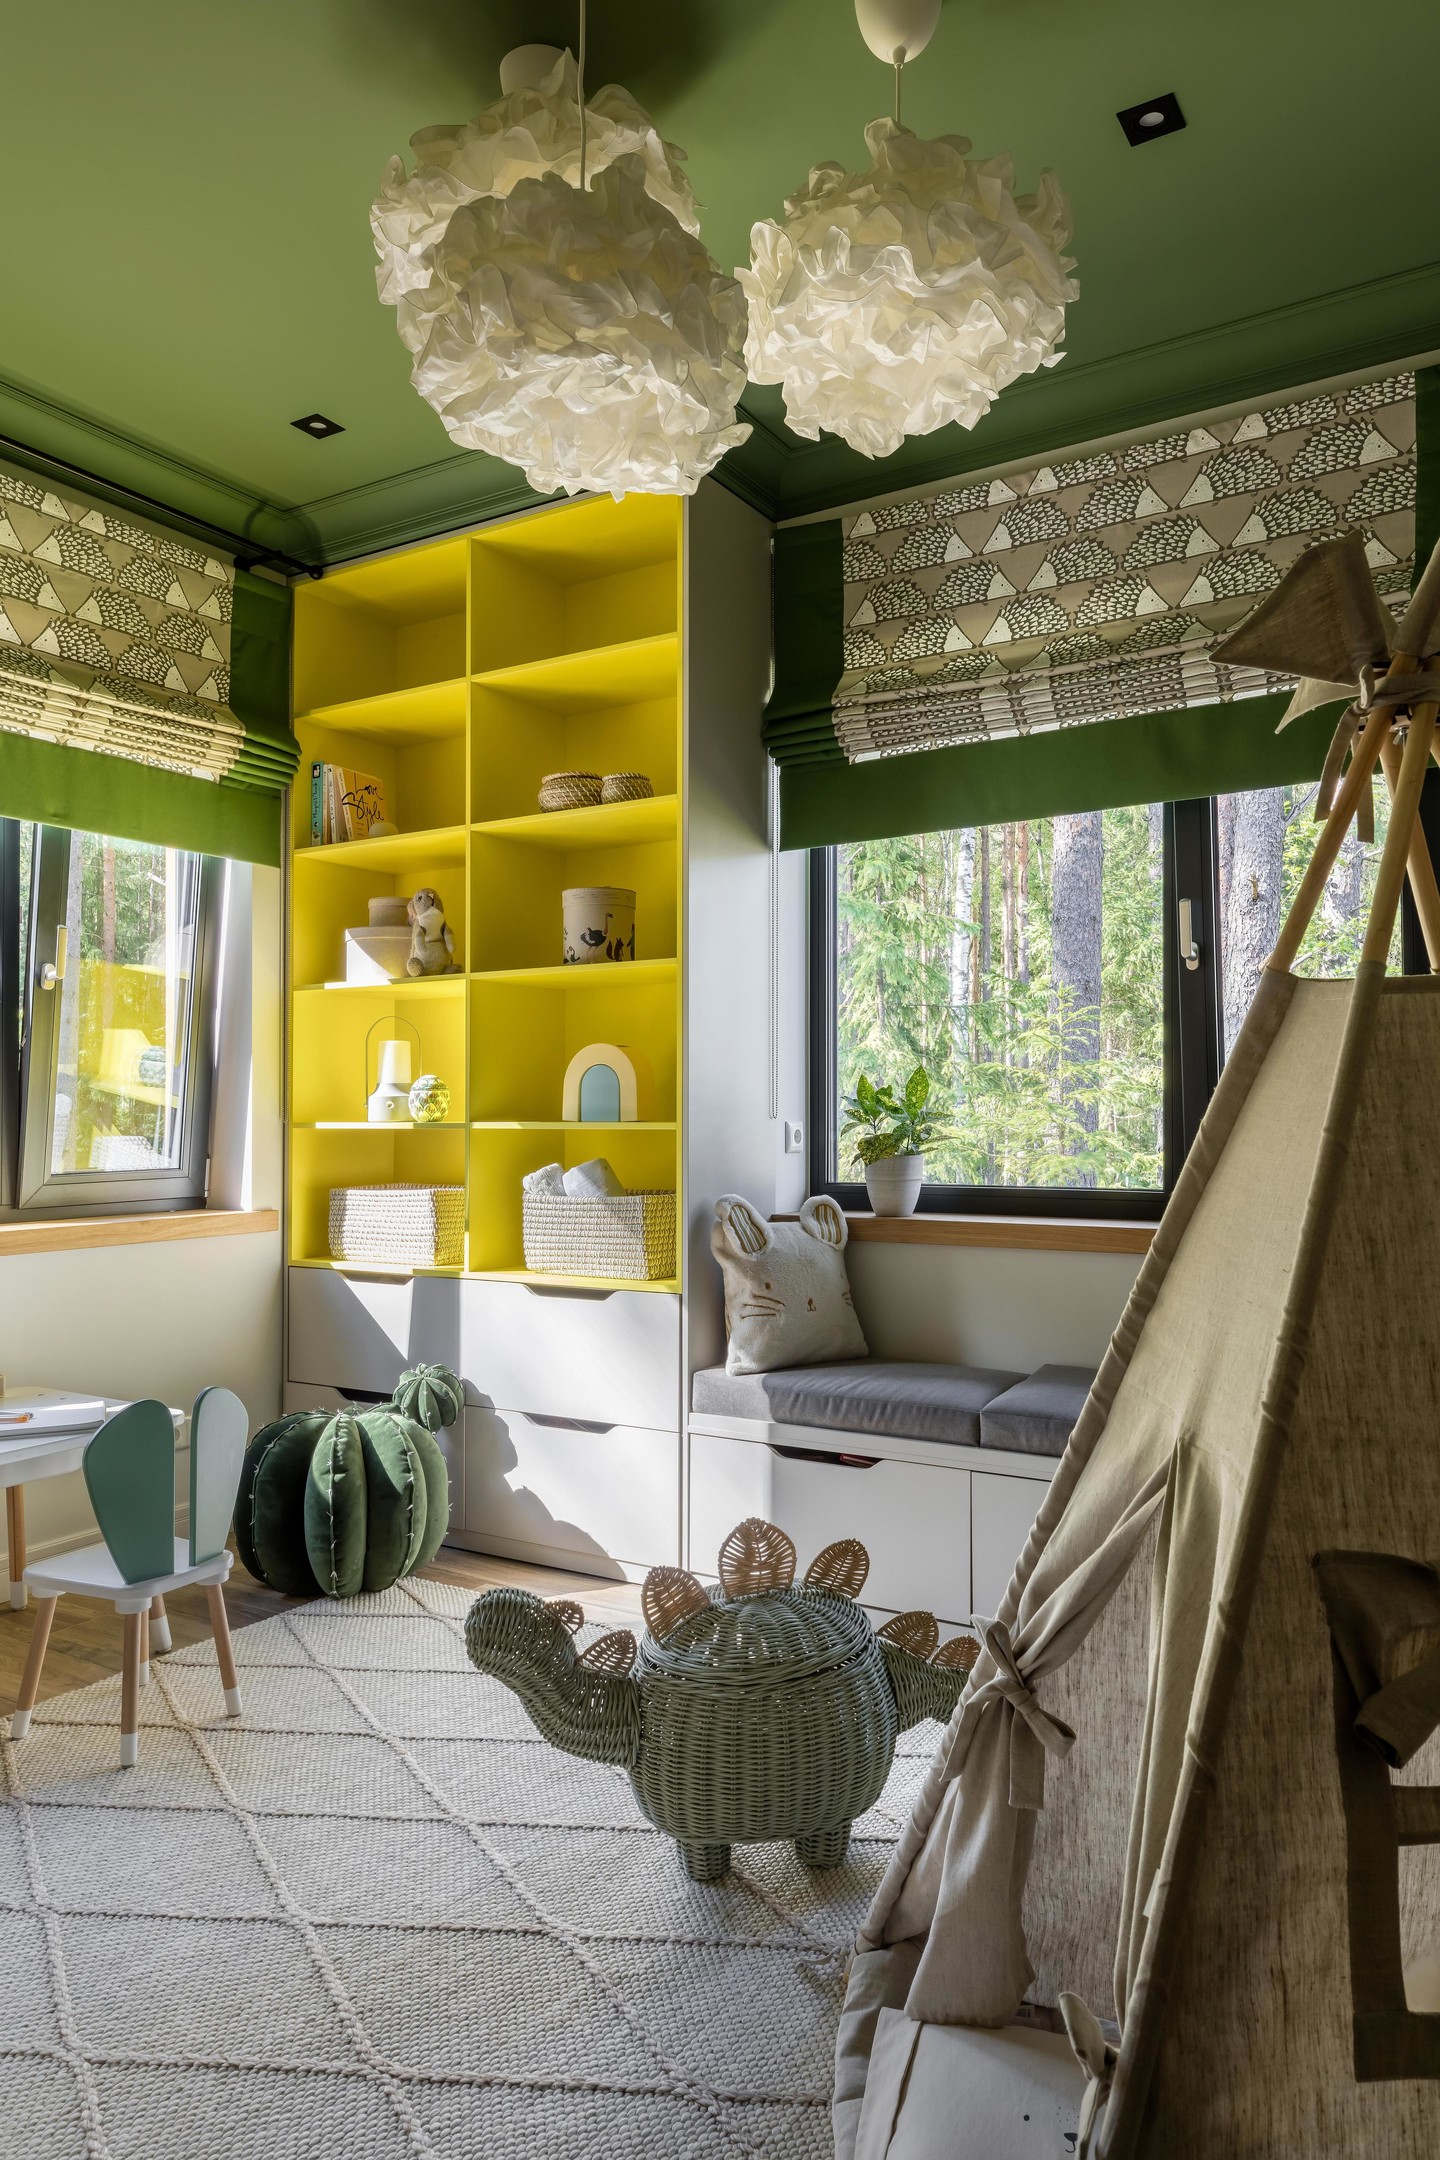 Phòng của trẻ em cũng là không gian phù hợp để thử nghiệm cặp đôi xanh lá - vàng vì sự trẻ trung mà nó mang lại. Sơn trần và rèm cửa xanh kết hợp kệ lưu trữ màu vàng cho bé yêu thêm thích thú không gian nhỏ của mình.